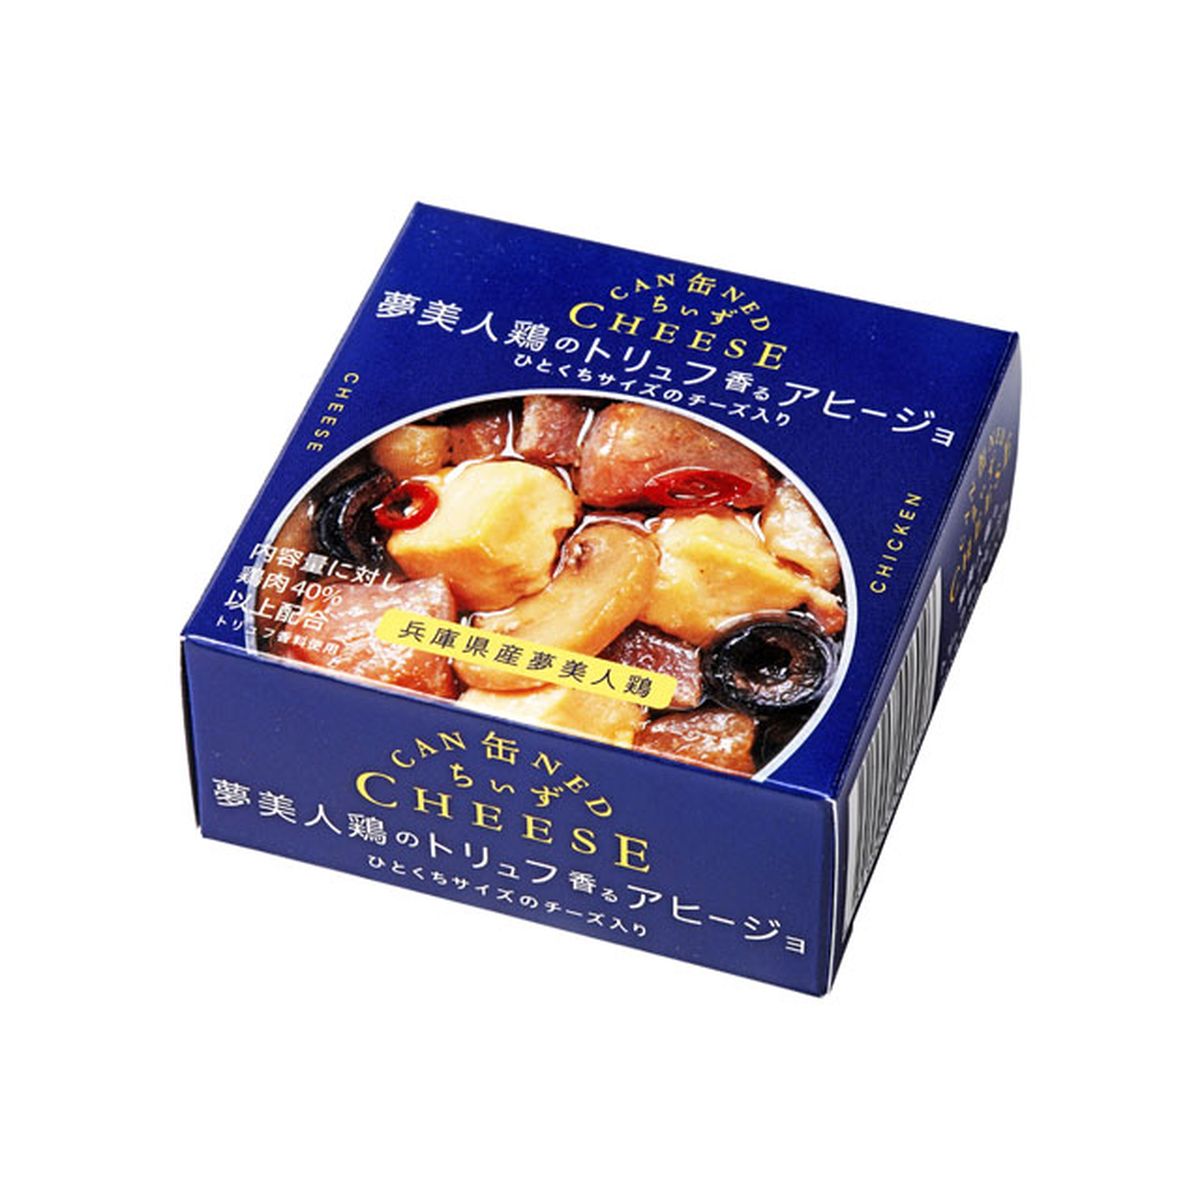 【6個入り】缶ちぃず 夢美人鶏のトリュフ香るアヒージョ 70g